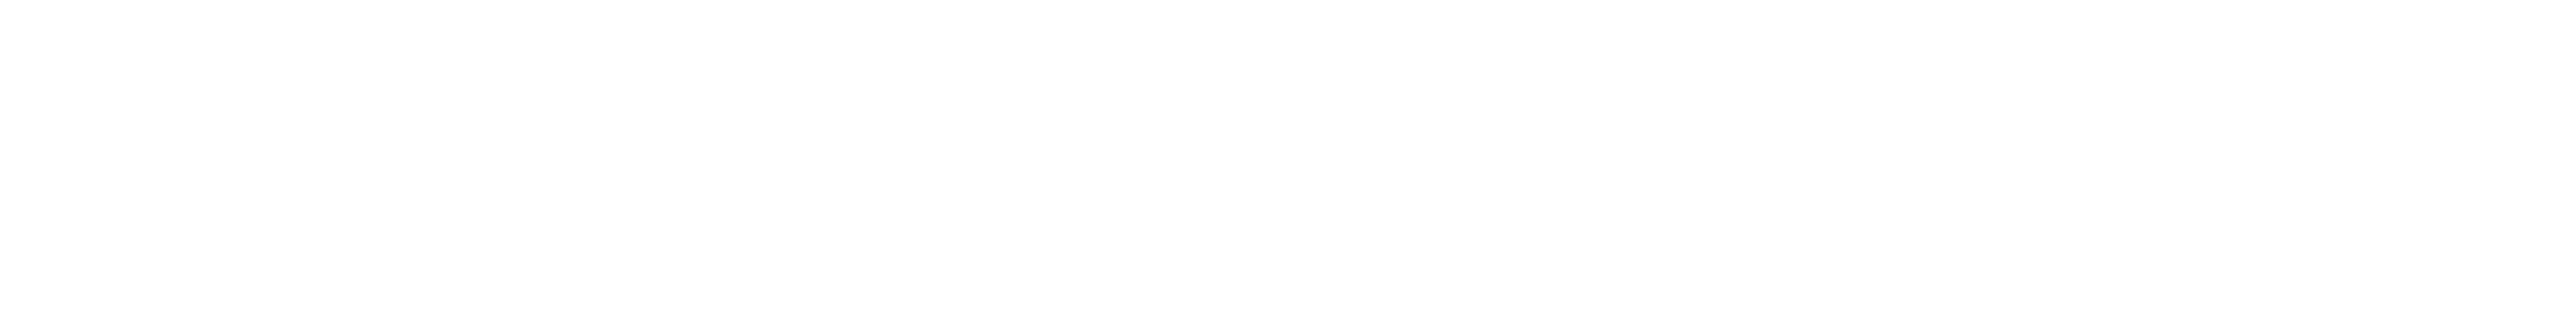 Will's Vegan Store logo